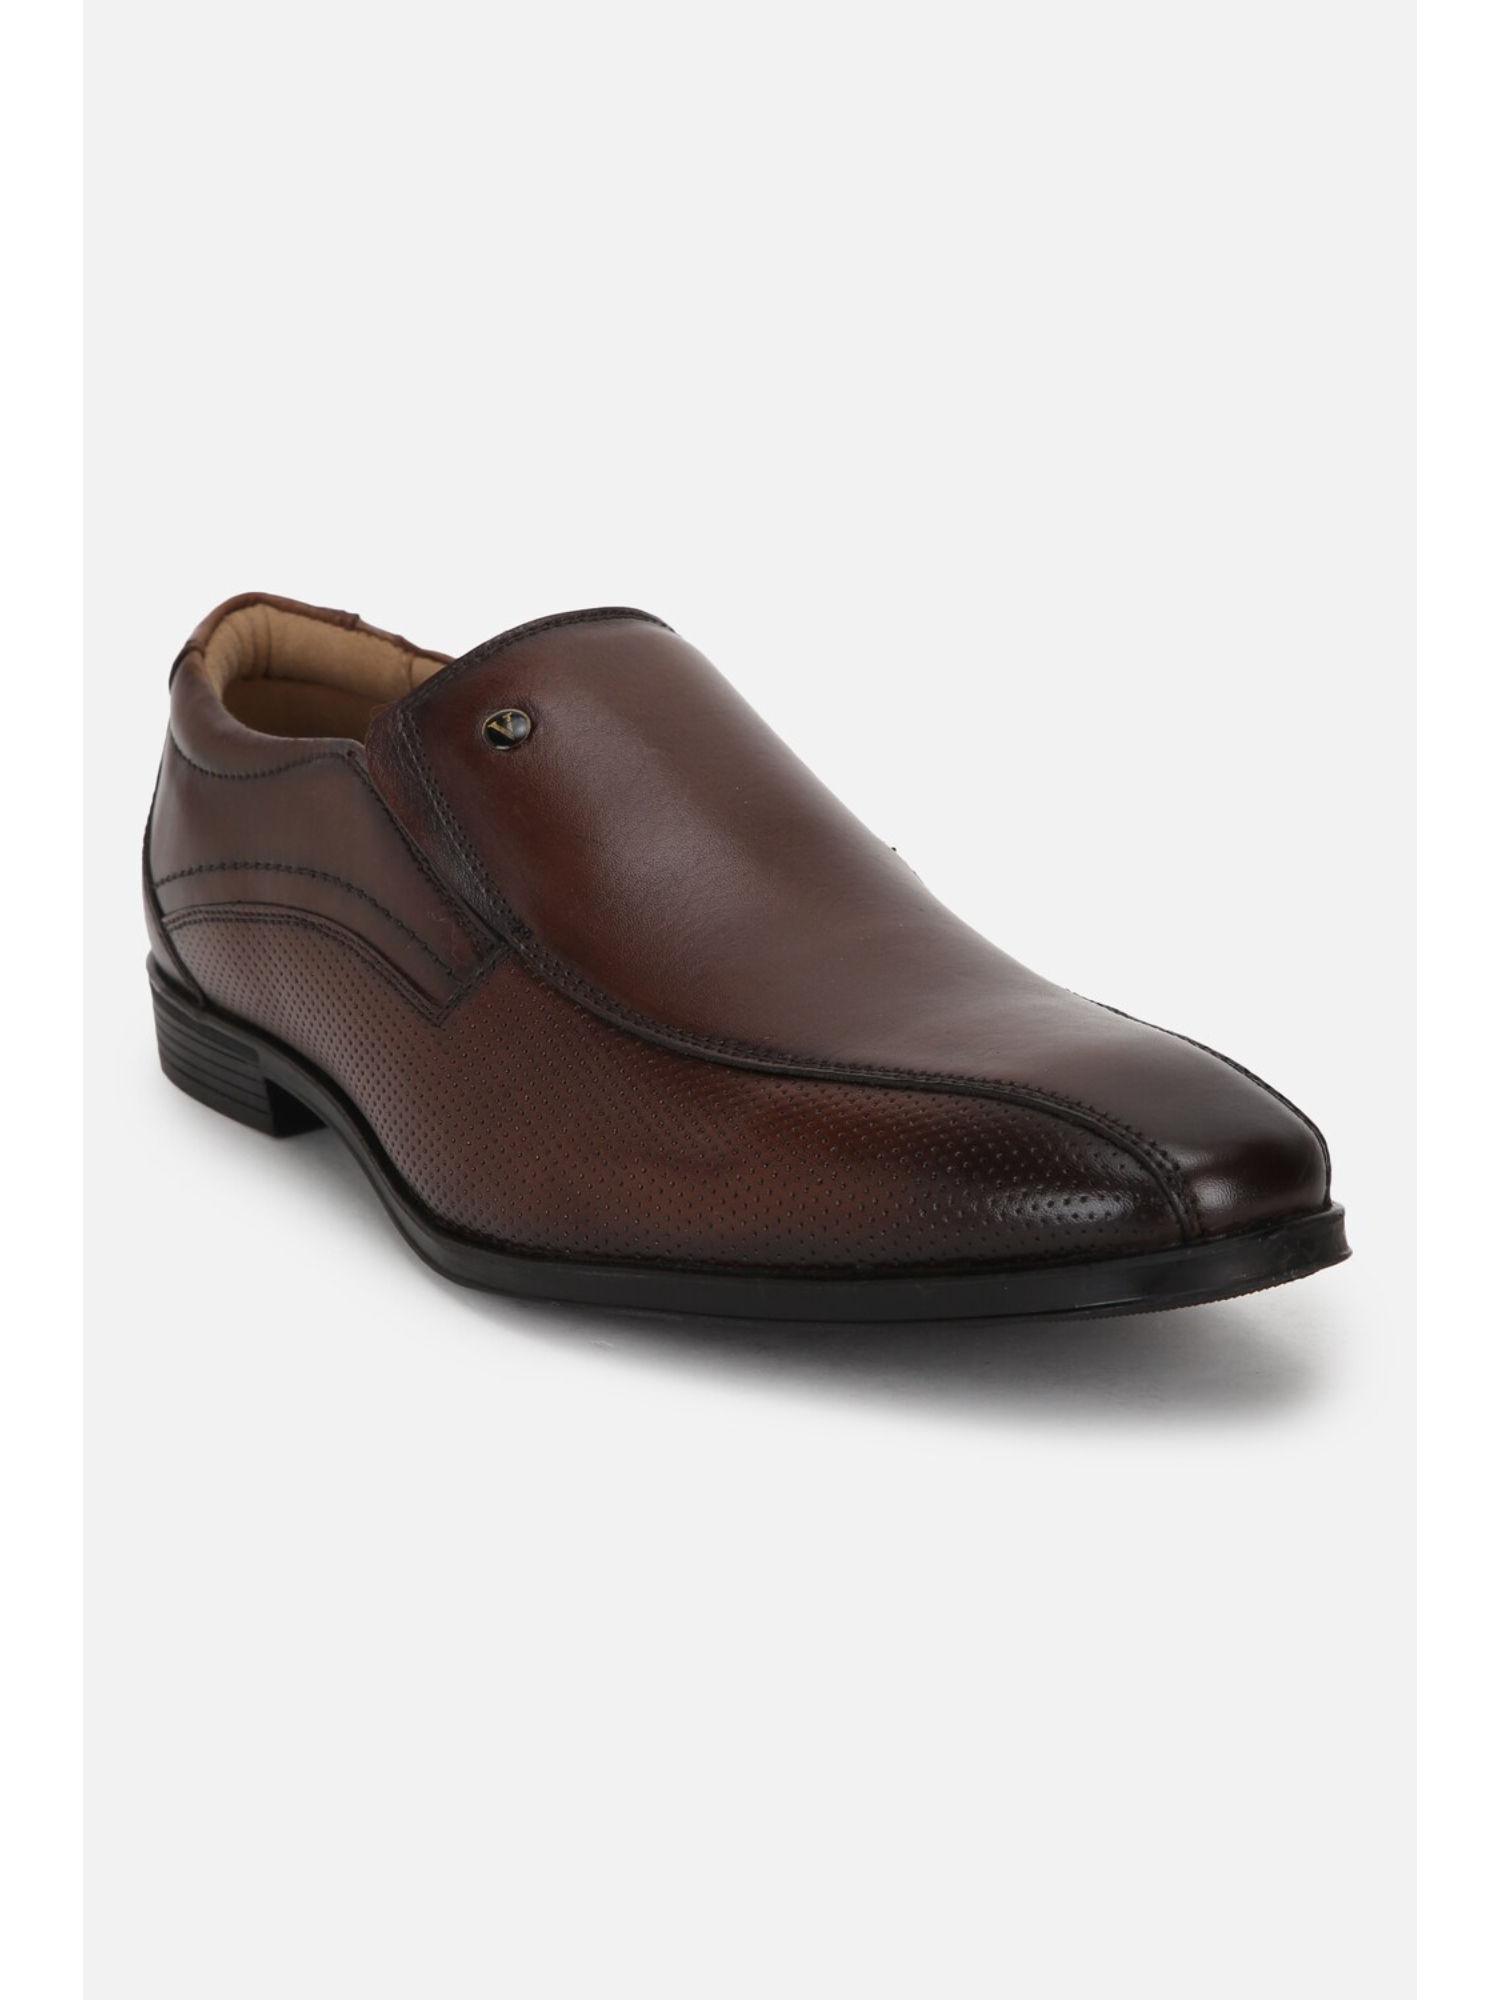 men-brown-slip-ons-loafers